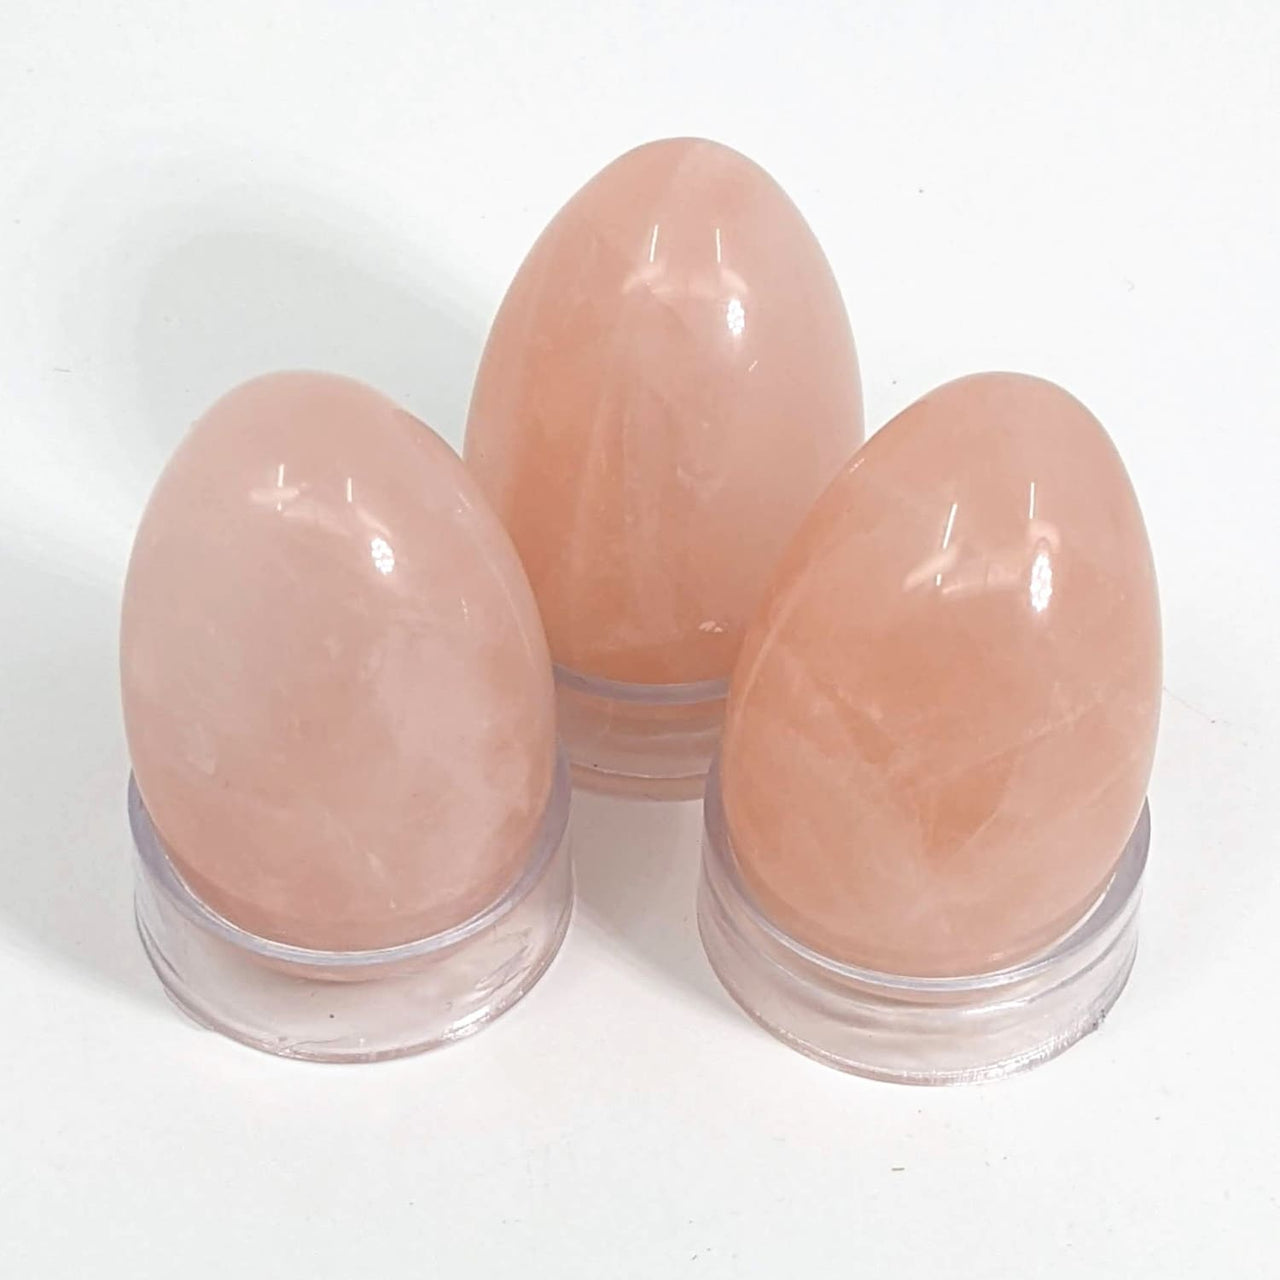 Rose Quartz 1.75 Small Egg (60g) #SK8073 - $10